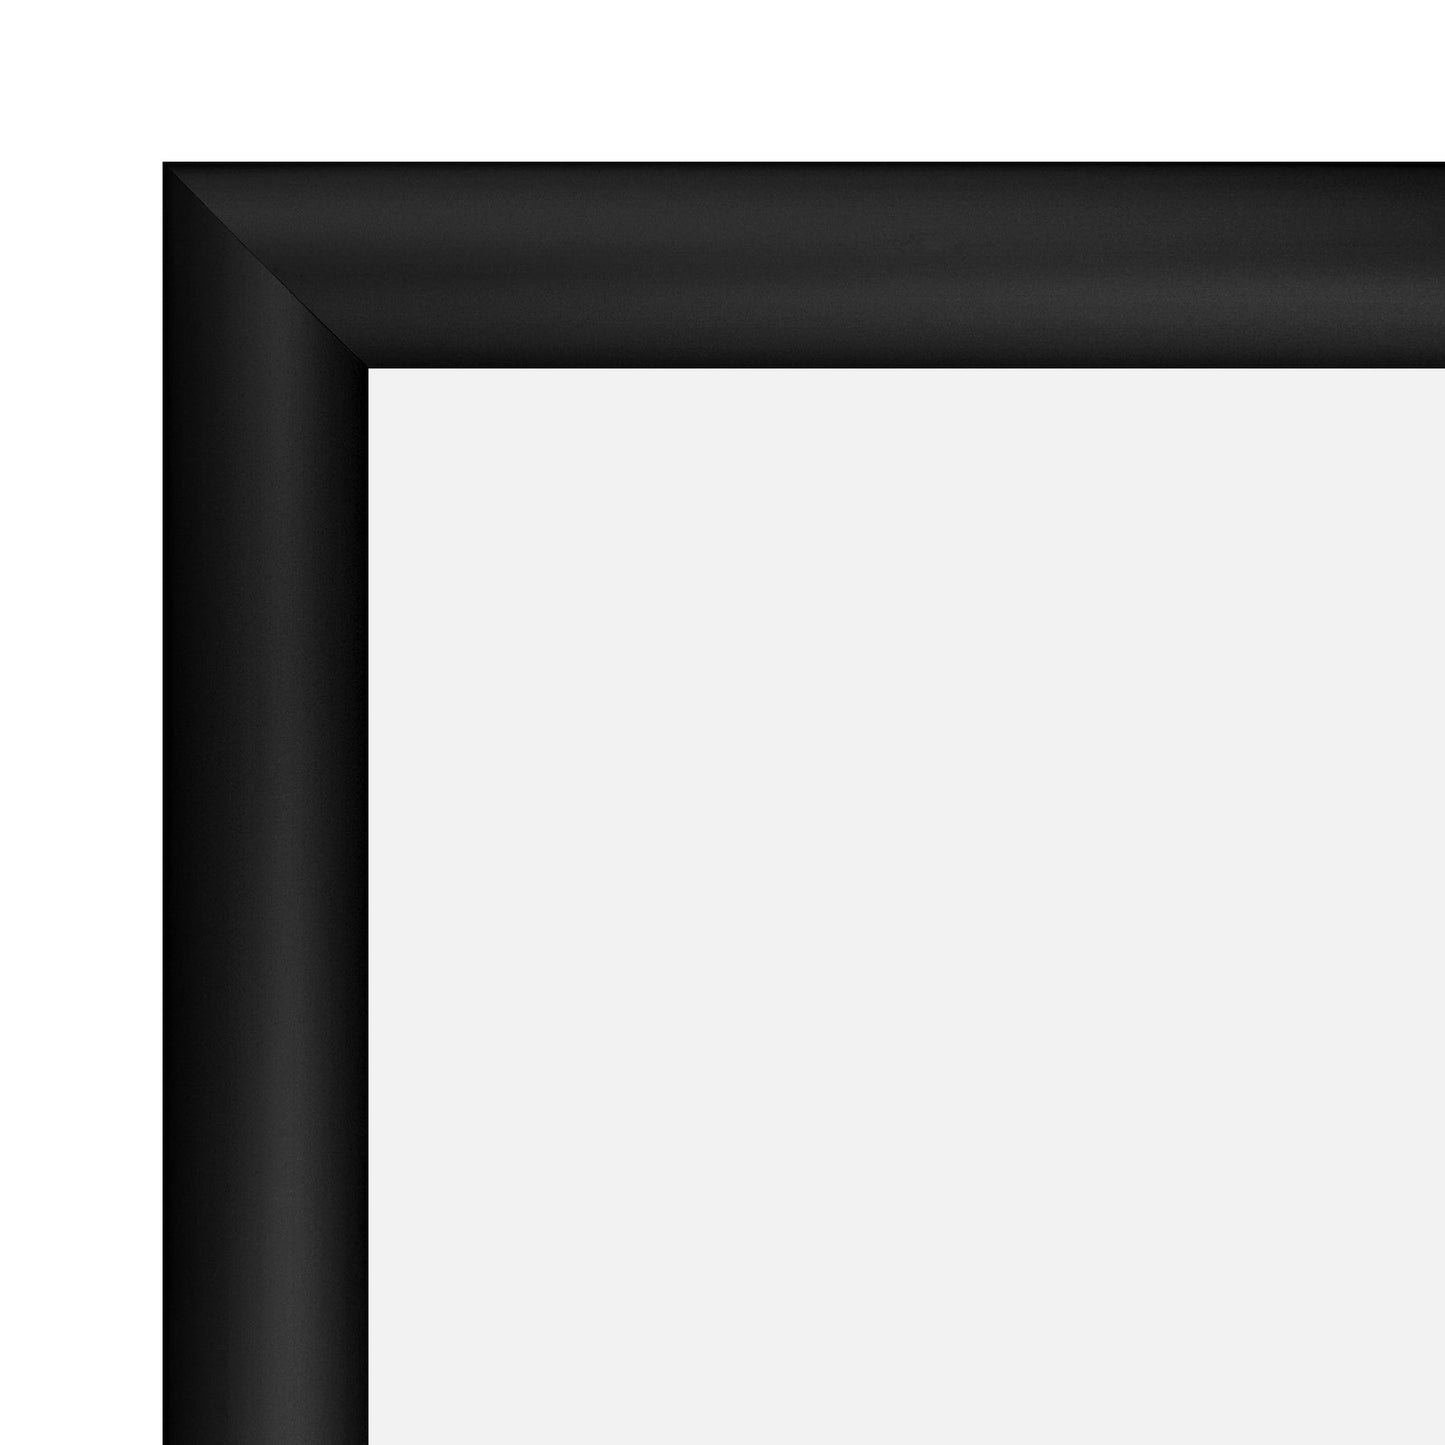 8.5x11 Black TRADEframe Snap Frame - 1.2" Profile - Snap Frames Direct